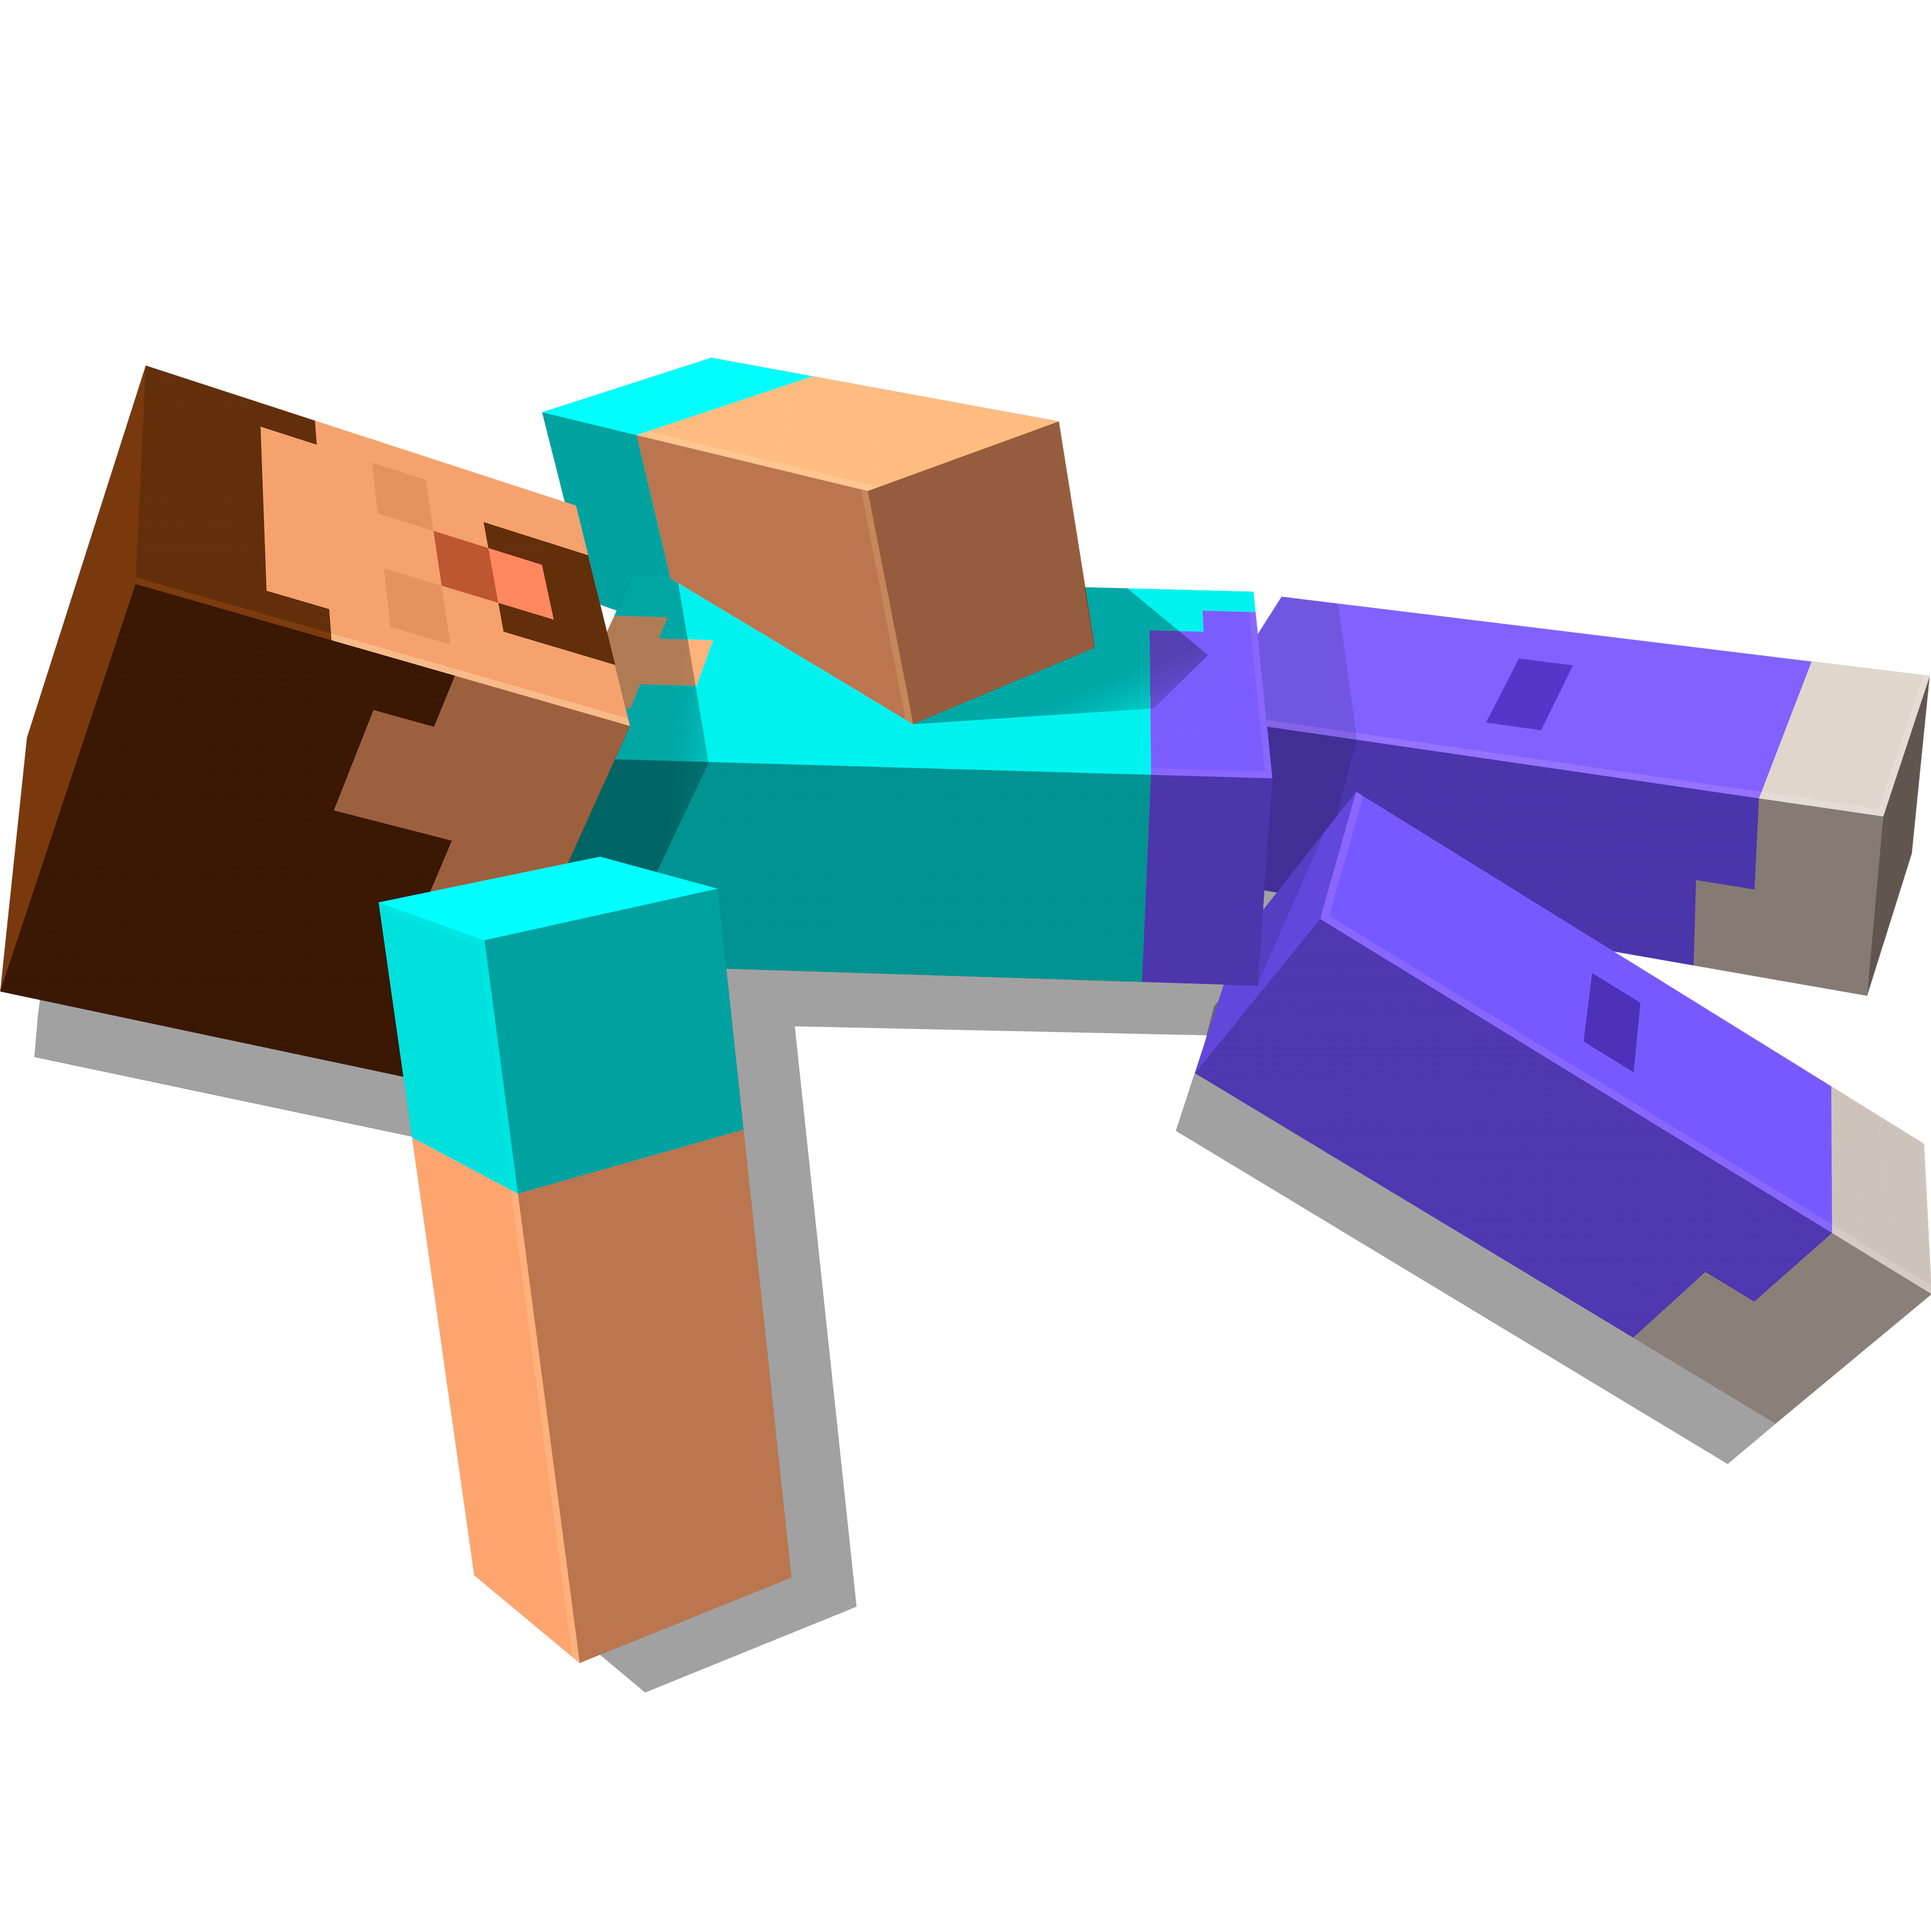 Персонаж Стив из игры Minecraft лежит на спине и спит